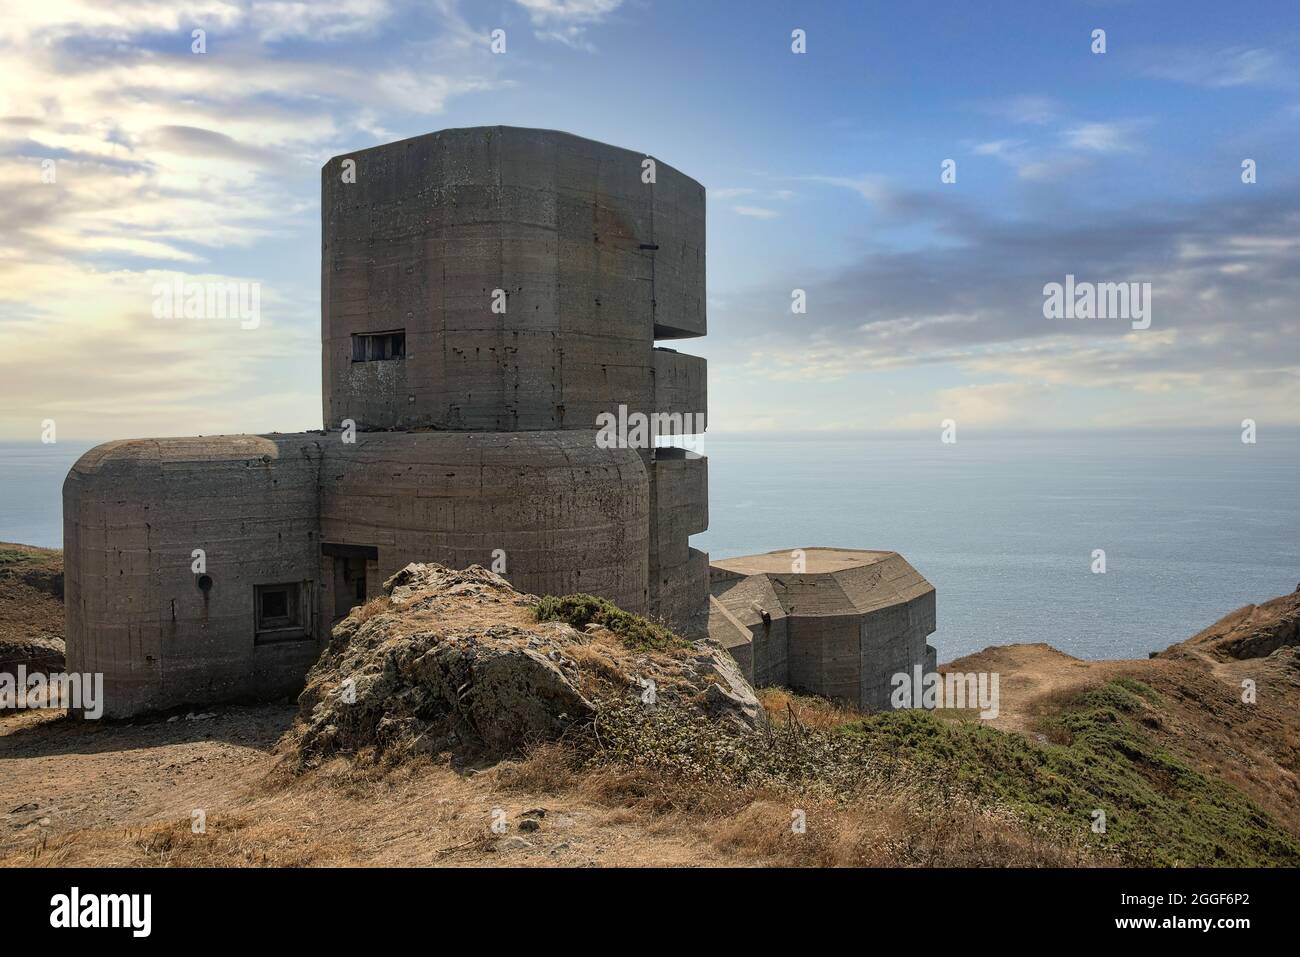 Il bunker di osservazione tedesco costruito durante la seconda guerra mondiale sull'isola di Guernsey, una delle Isole del canale della Manica. Foto Stock